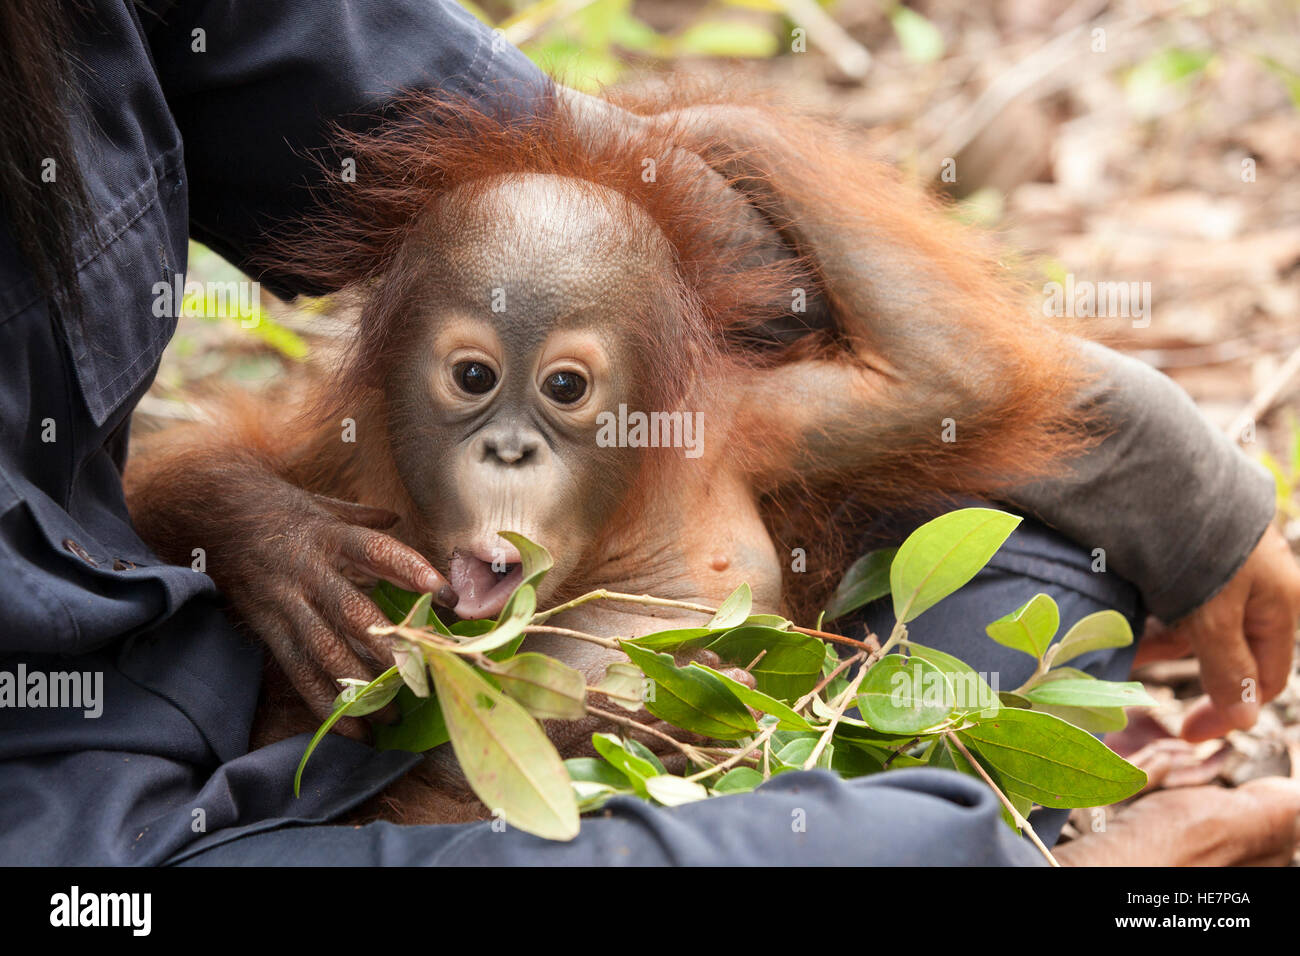 Curieux bébé orphelin orangutan (Pongo pygmaeus) dans le tour de gardien jouant avec les feuilles pendant la session d'entraînement de forêt pour se préparer à la libération éventuelle Banque D'Images